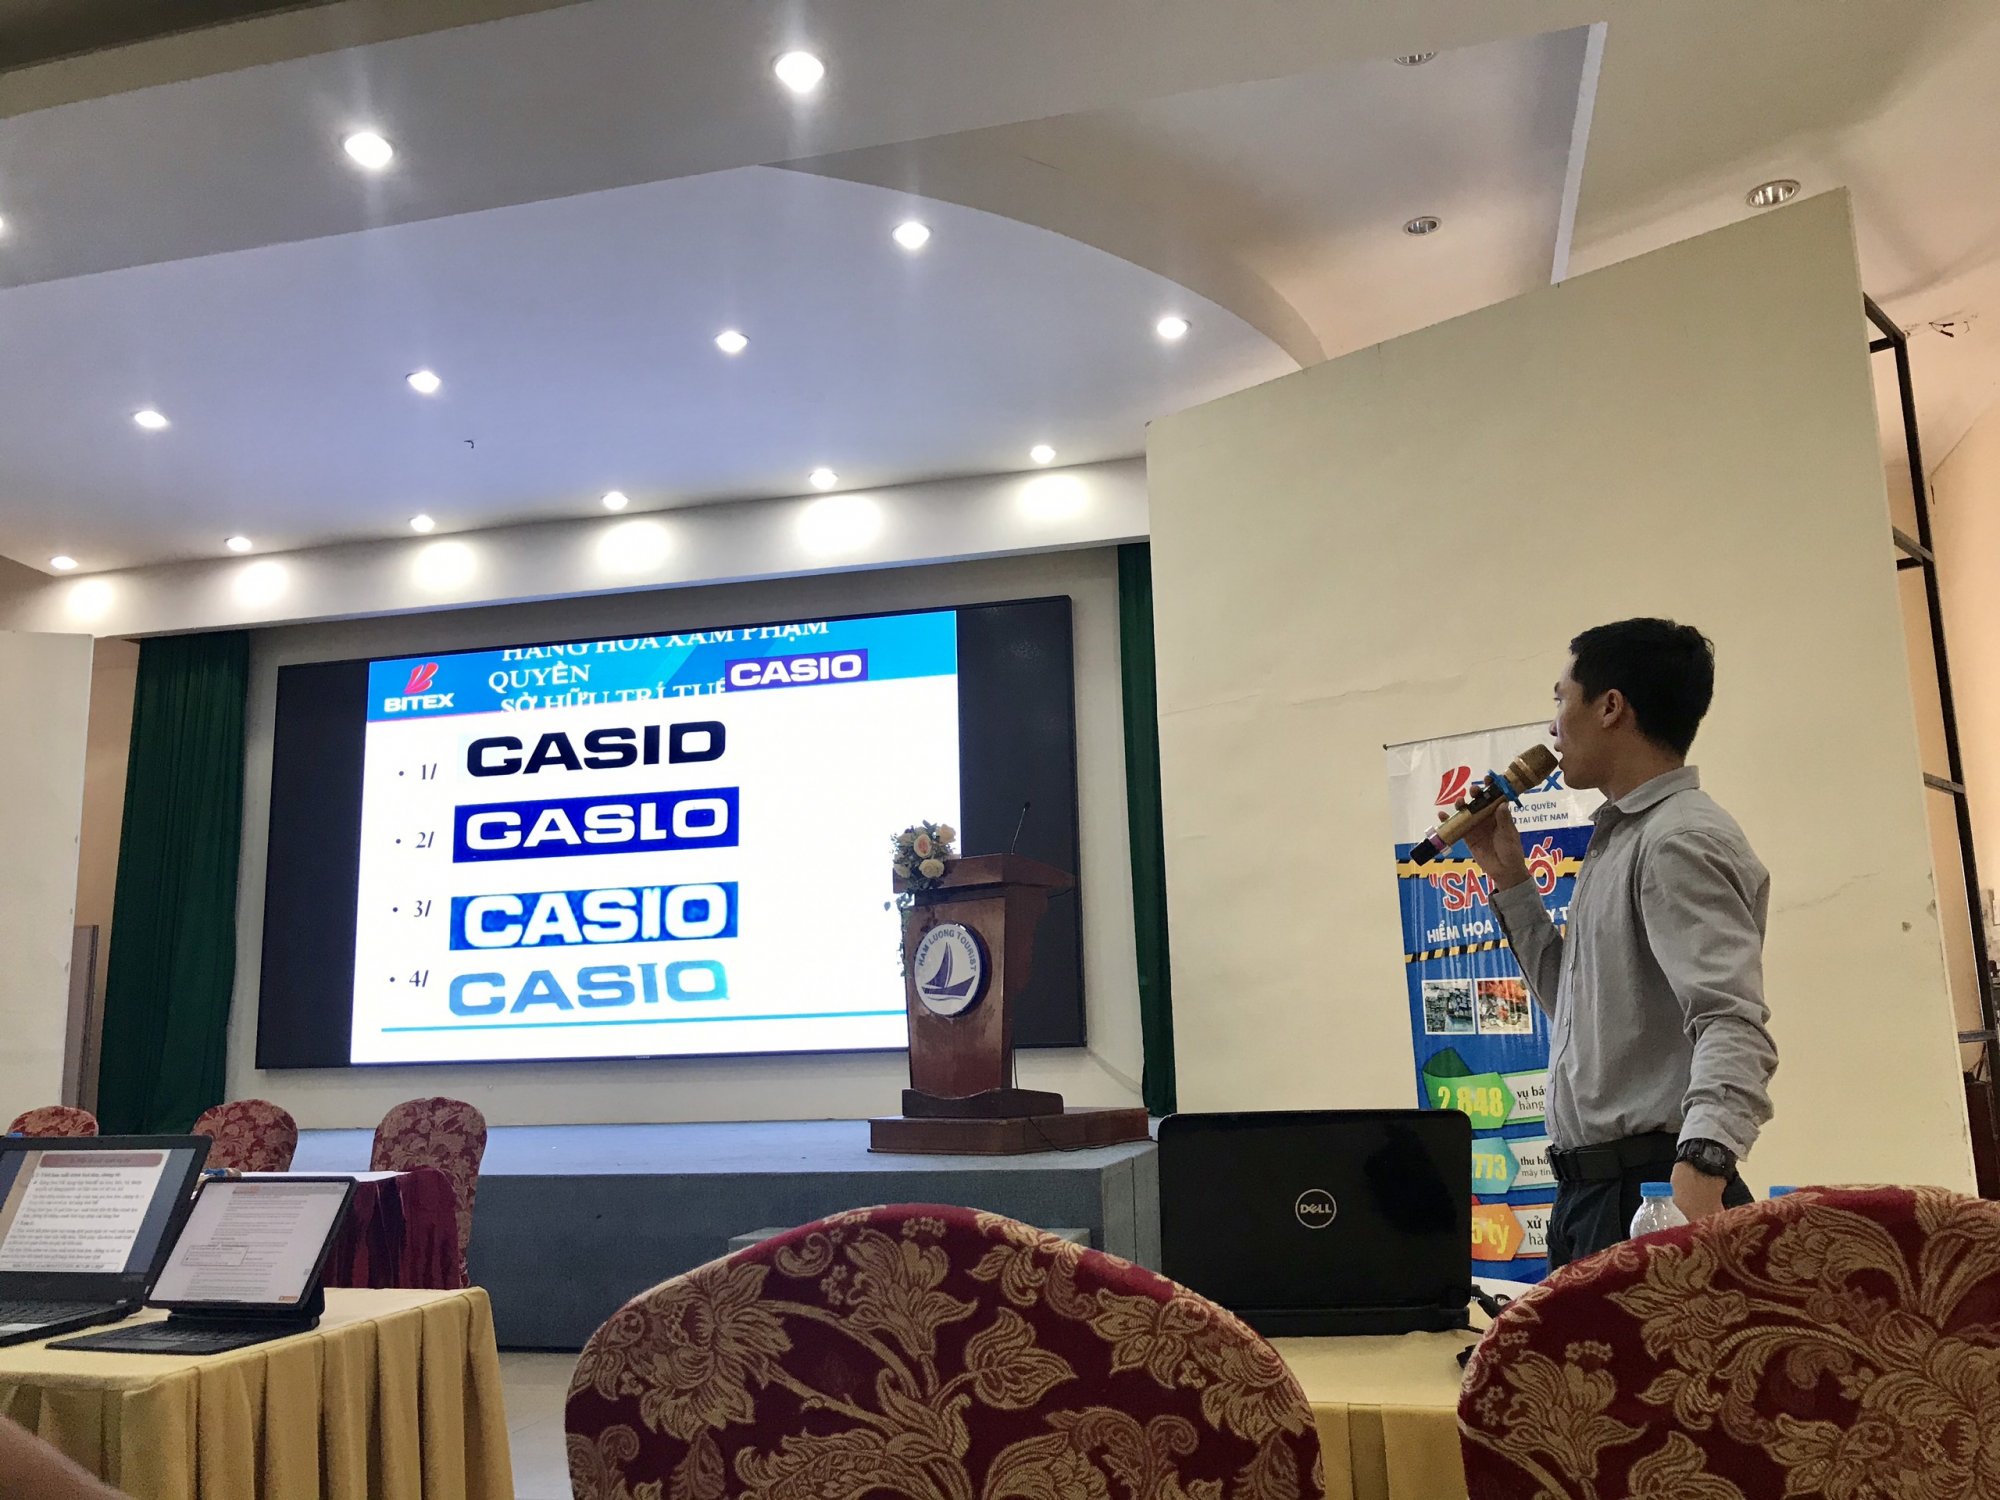 tập huấn chống giả máy tính Casio tại buổi hội nghị